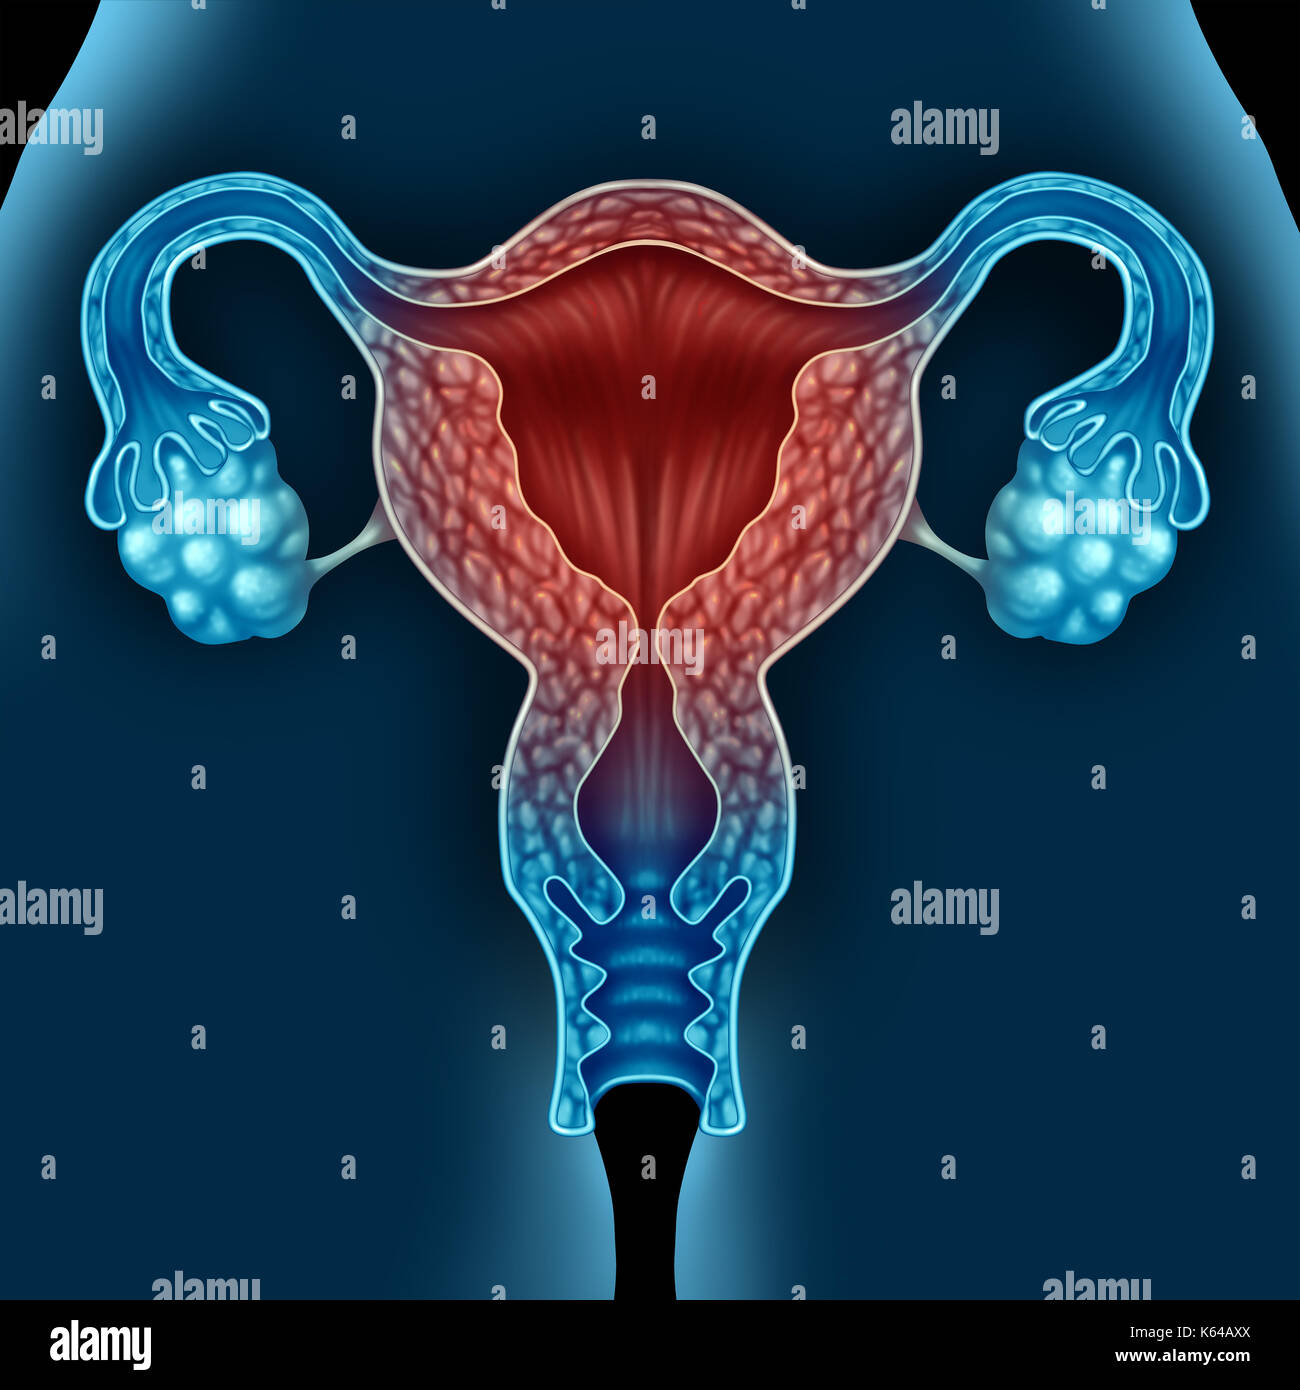 L'état de santé des femmes ménopause due au vieillissement comme un utérus humain comme une condition de la ménopause dans un concept 3d illustration éléments. Banque D'Images